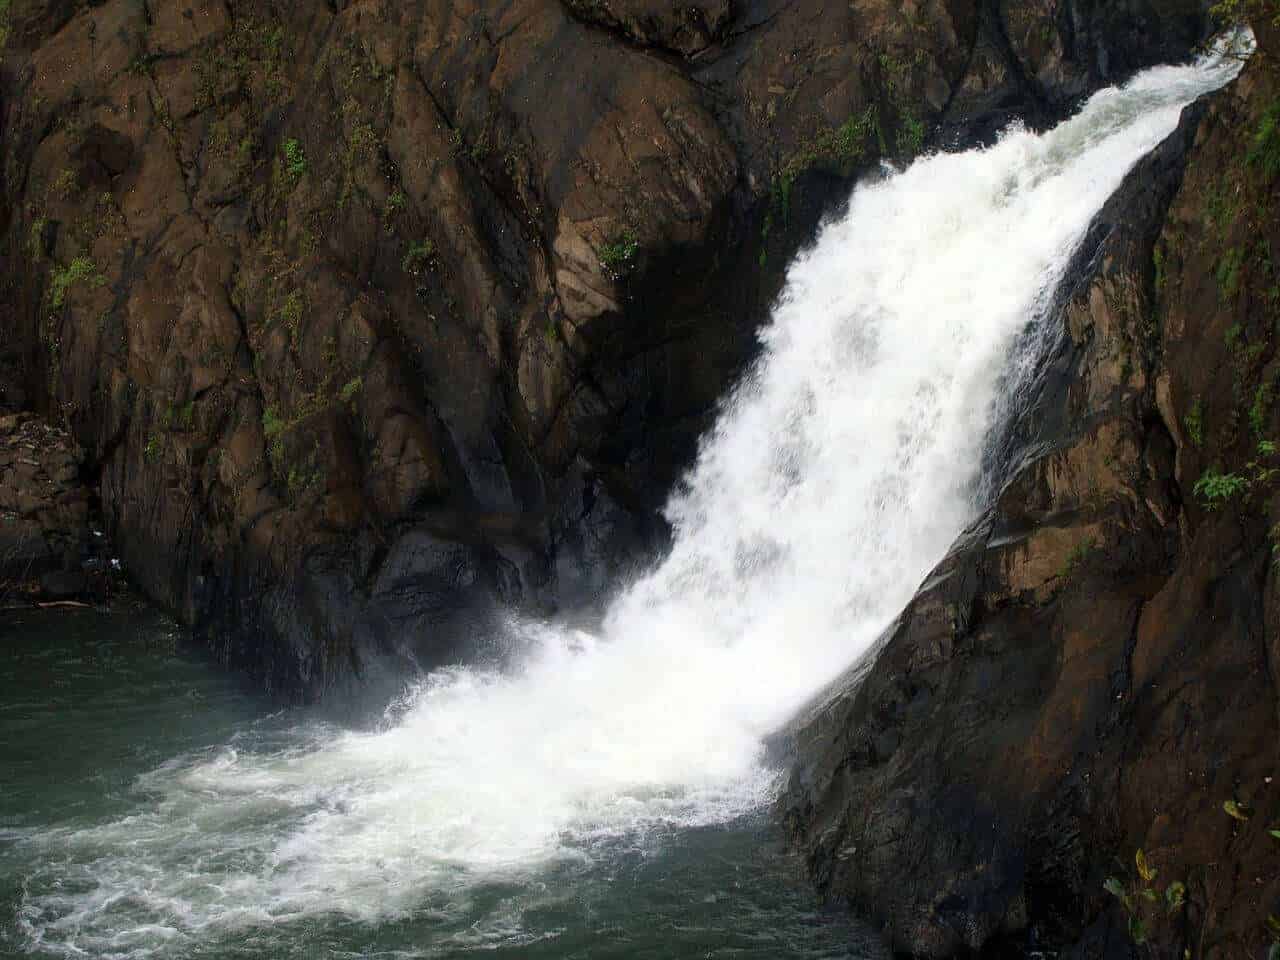 Dudhsagar waterfalls - Goa